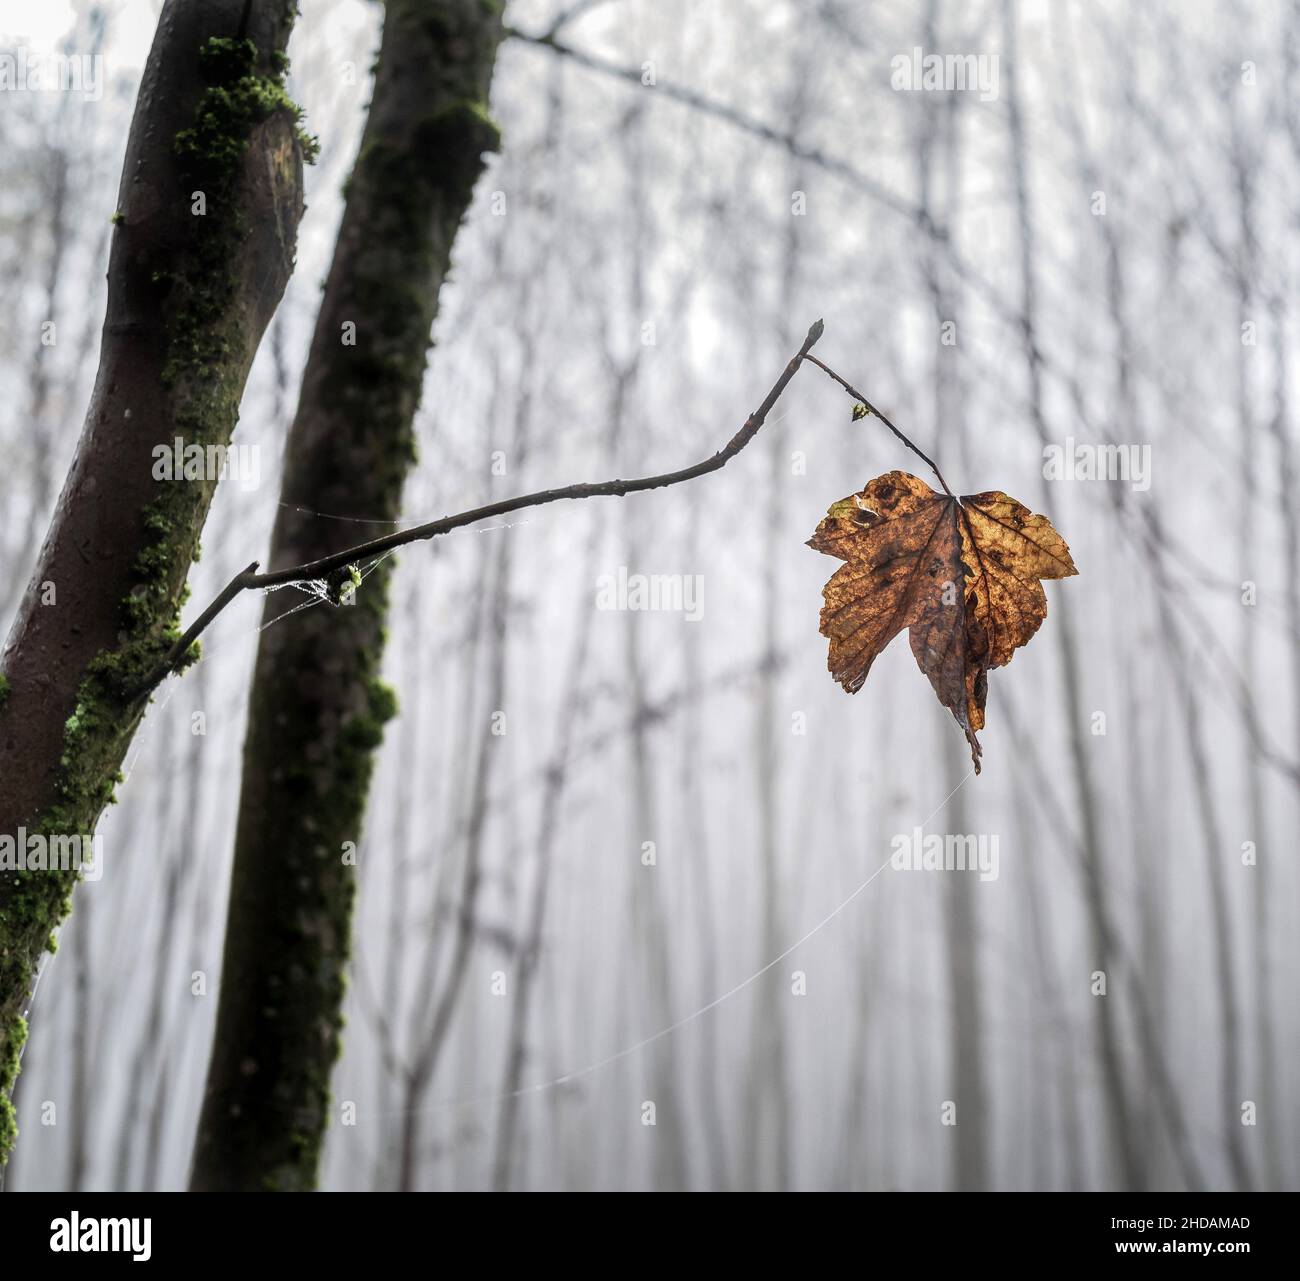 Ein Blatt hängt einsam auf einem AST eines Baumes im späten Herbst. Foto Stock